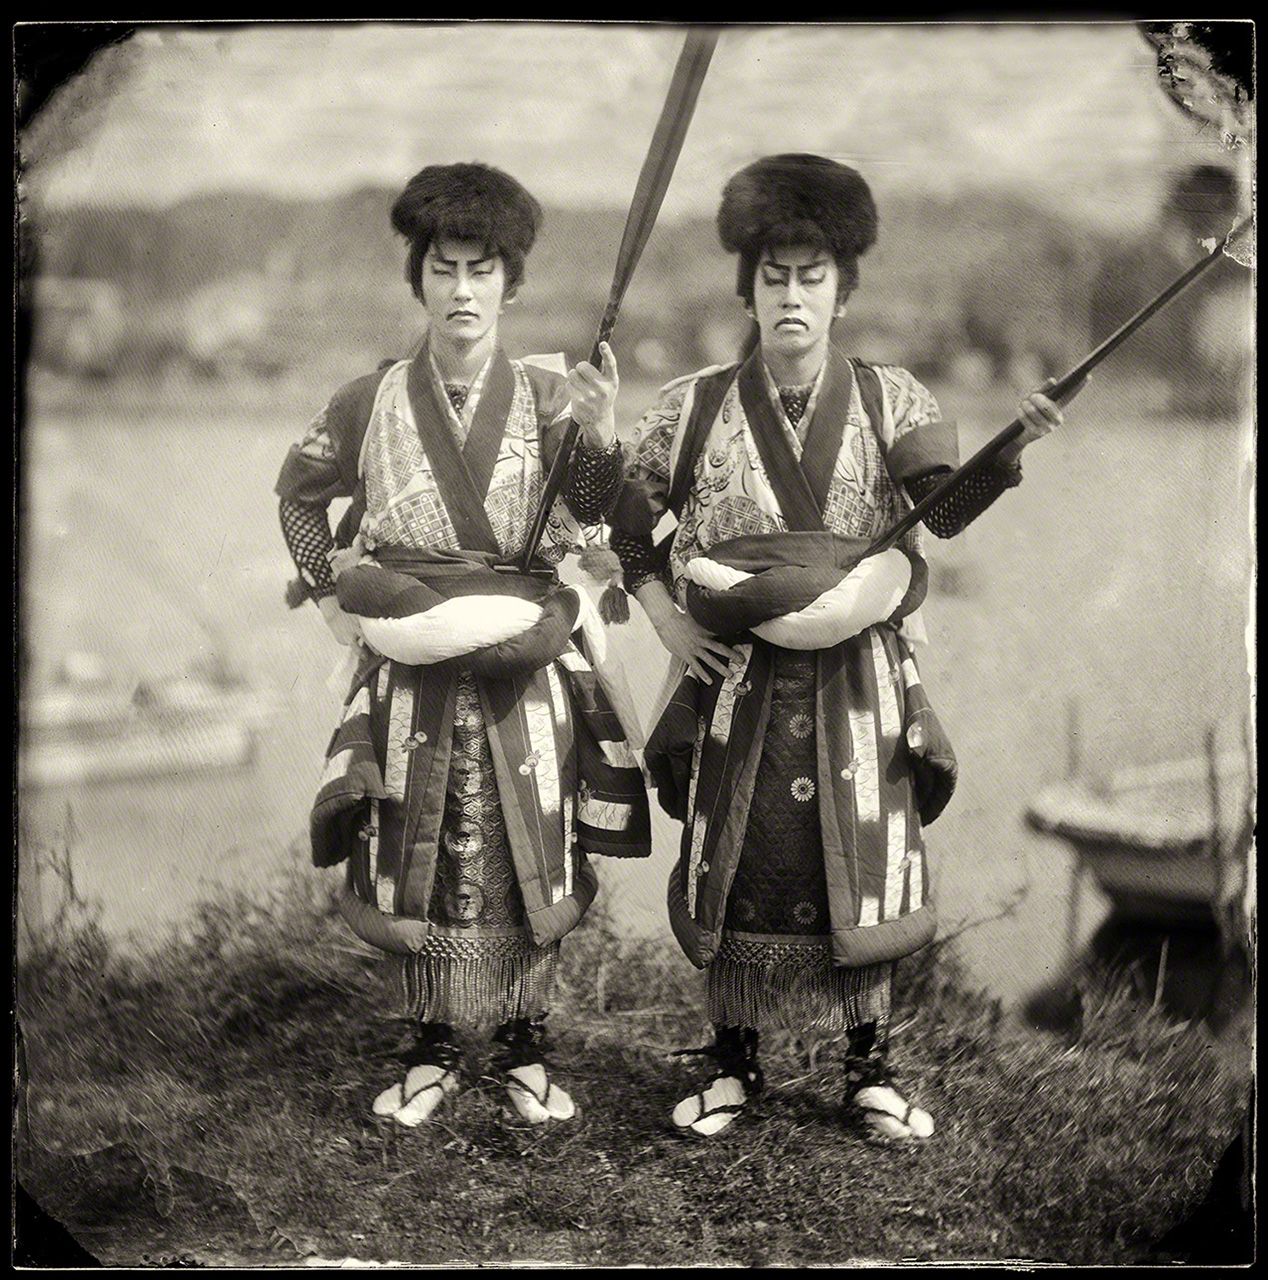 شابان يشاركان في مهرجان بمدينة ماتسوي في فترة إيدو (1603-1868). ويقام المهرجان المسمى ’’هوران إنيا‘‘ مرة واحدة فقط كل 10 سنوات.